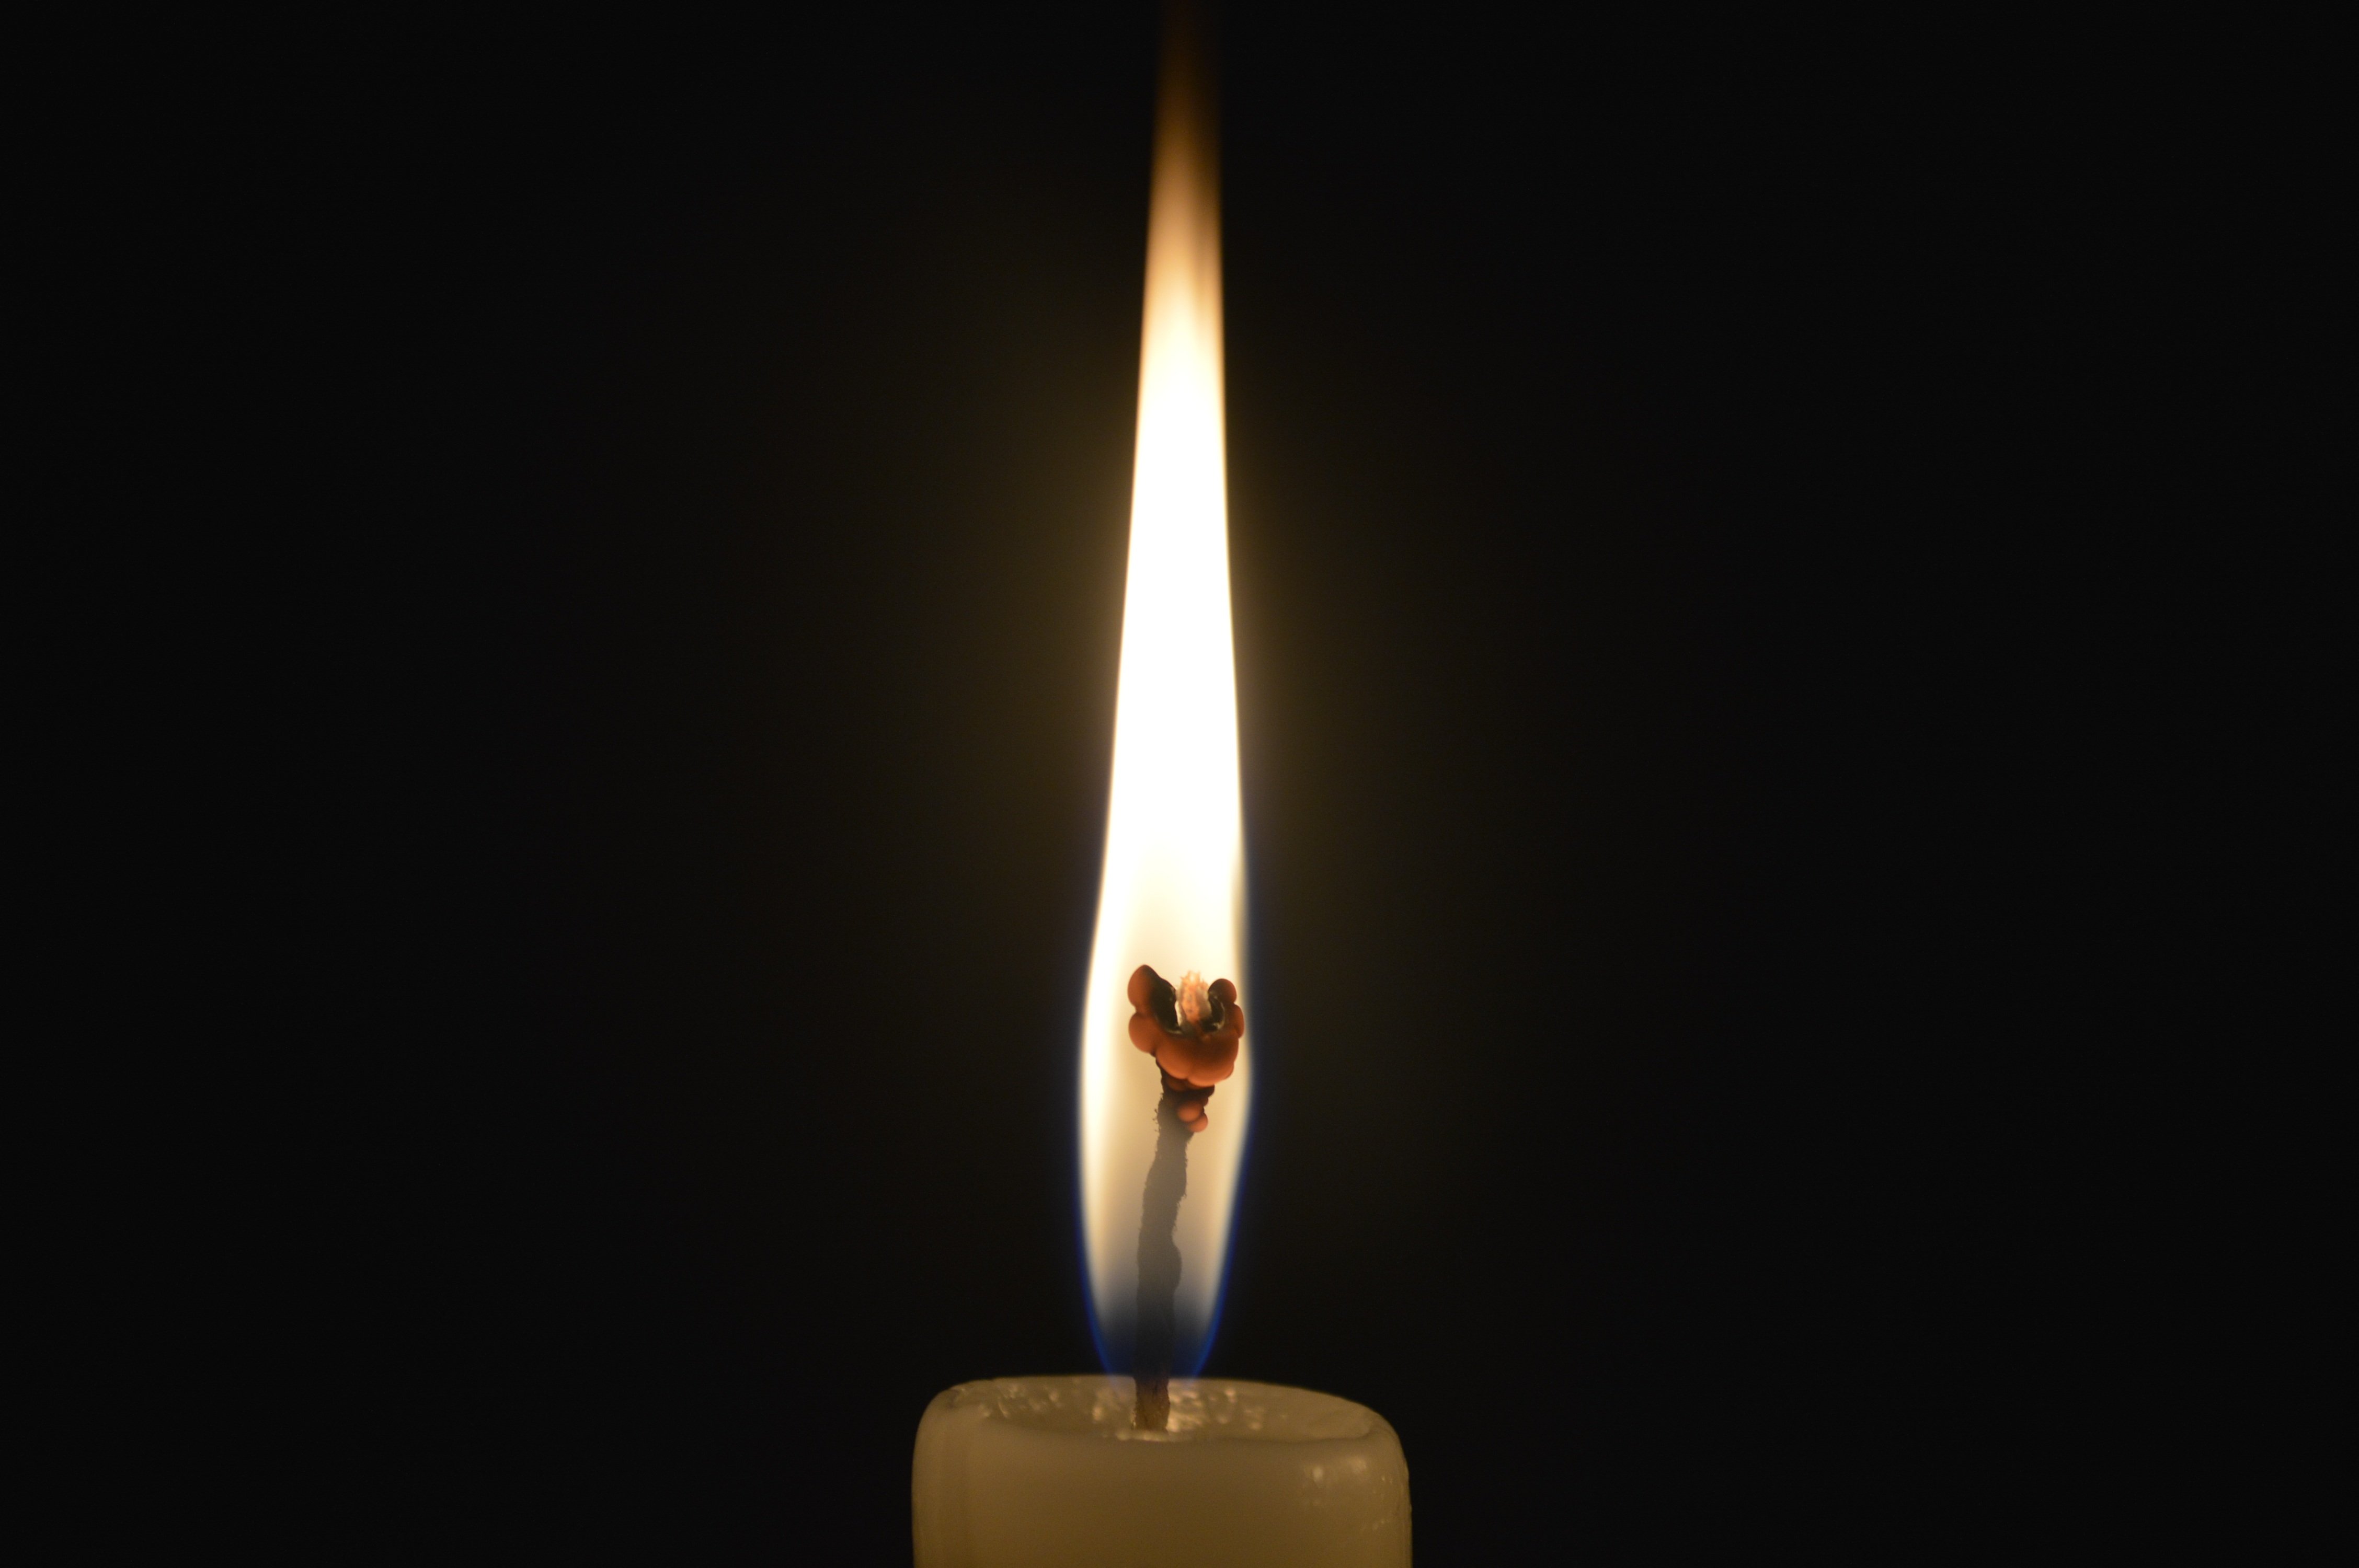 Видео свеча на черном фоне. Огарок свечи. В пламени свечи. Свечка на черном фоне. Горящая свеча.